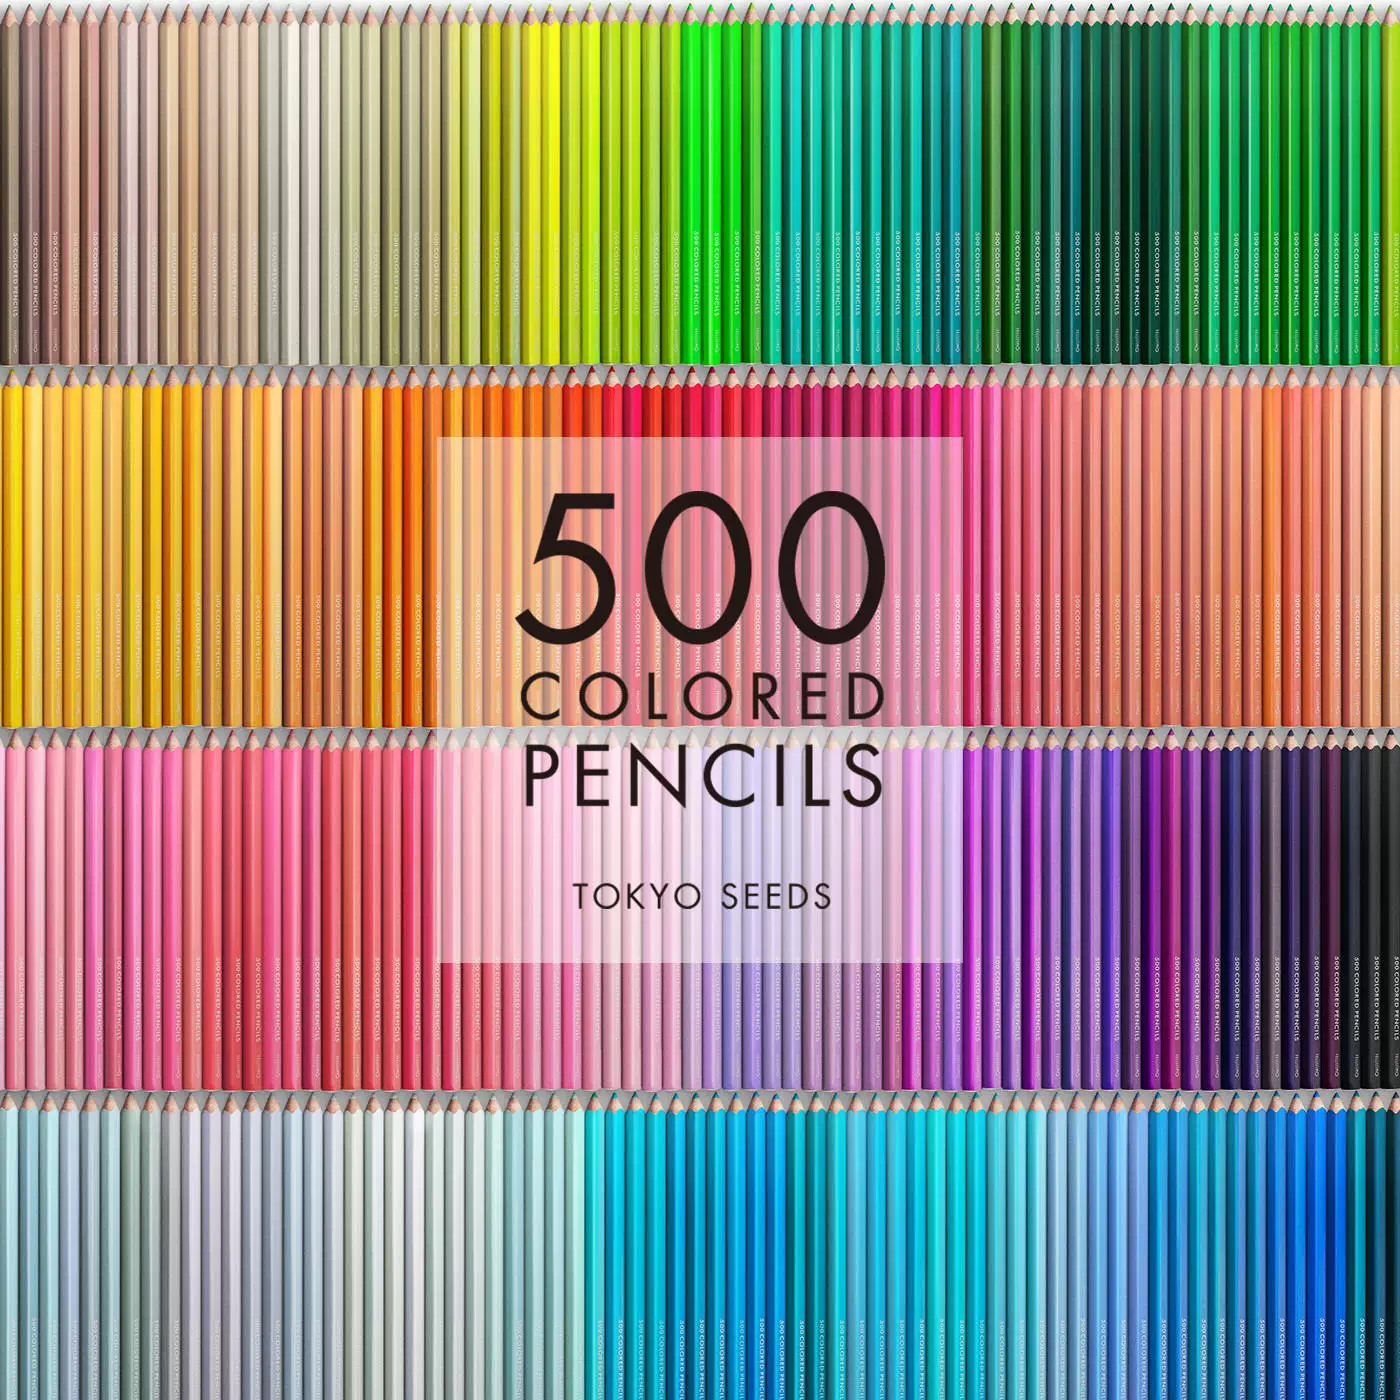 特価再入荷FELISSIMO（フェリシモ）色鉛筆 500 COLORED PENCILS/25PENCILS 中古品 全500本（25本×20箱）不足なし 色鉛筆